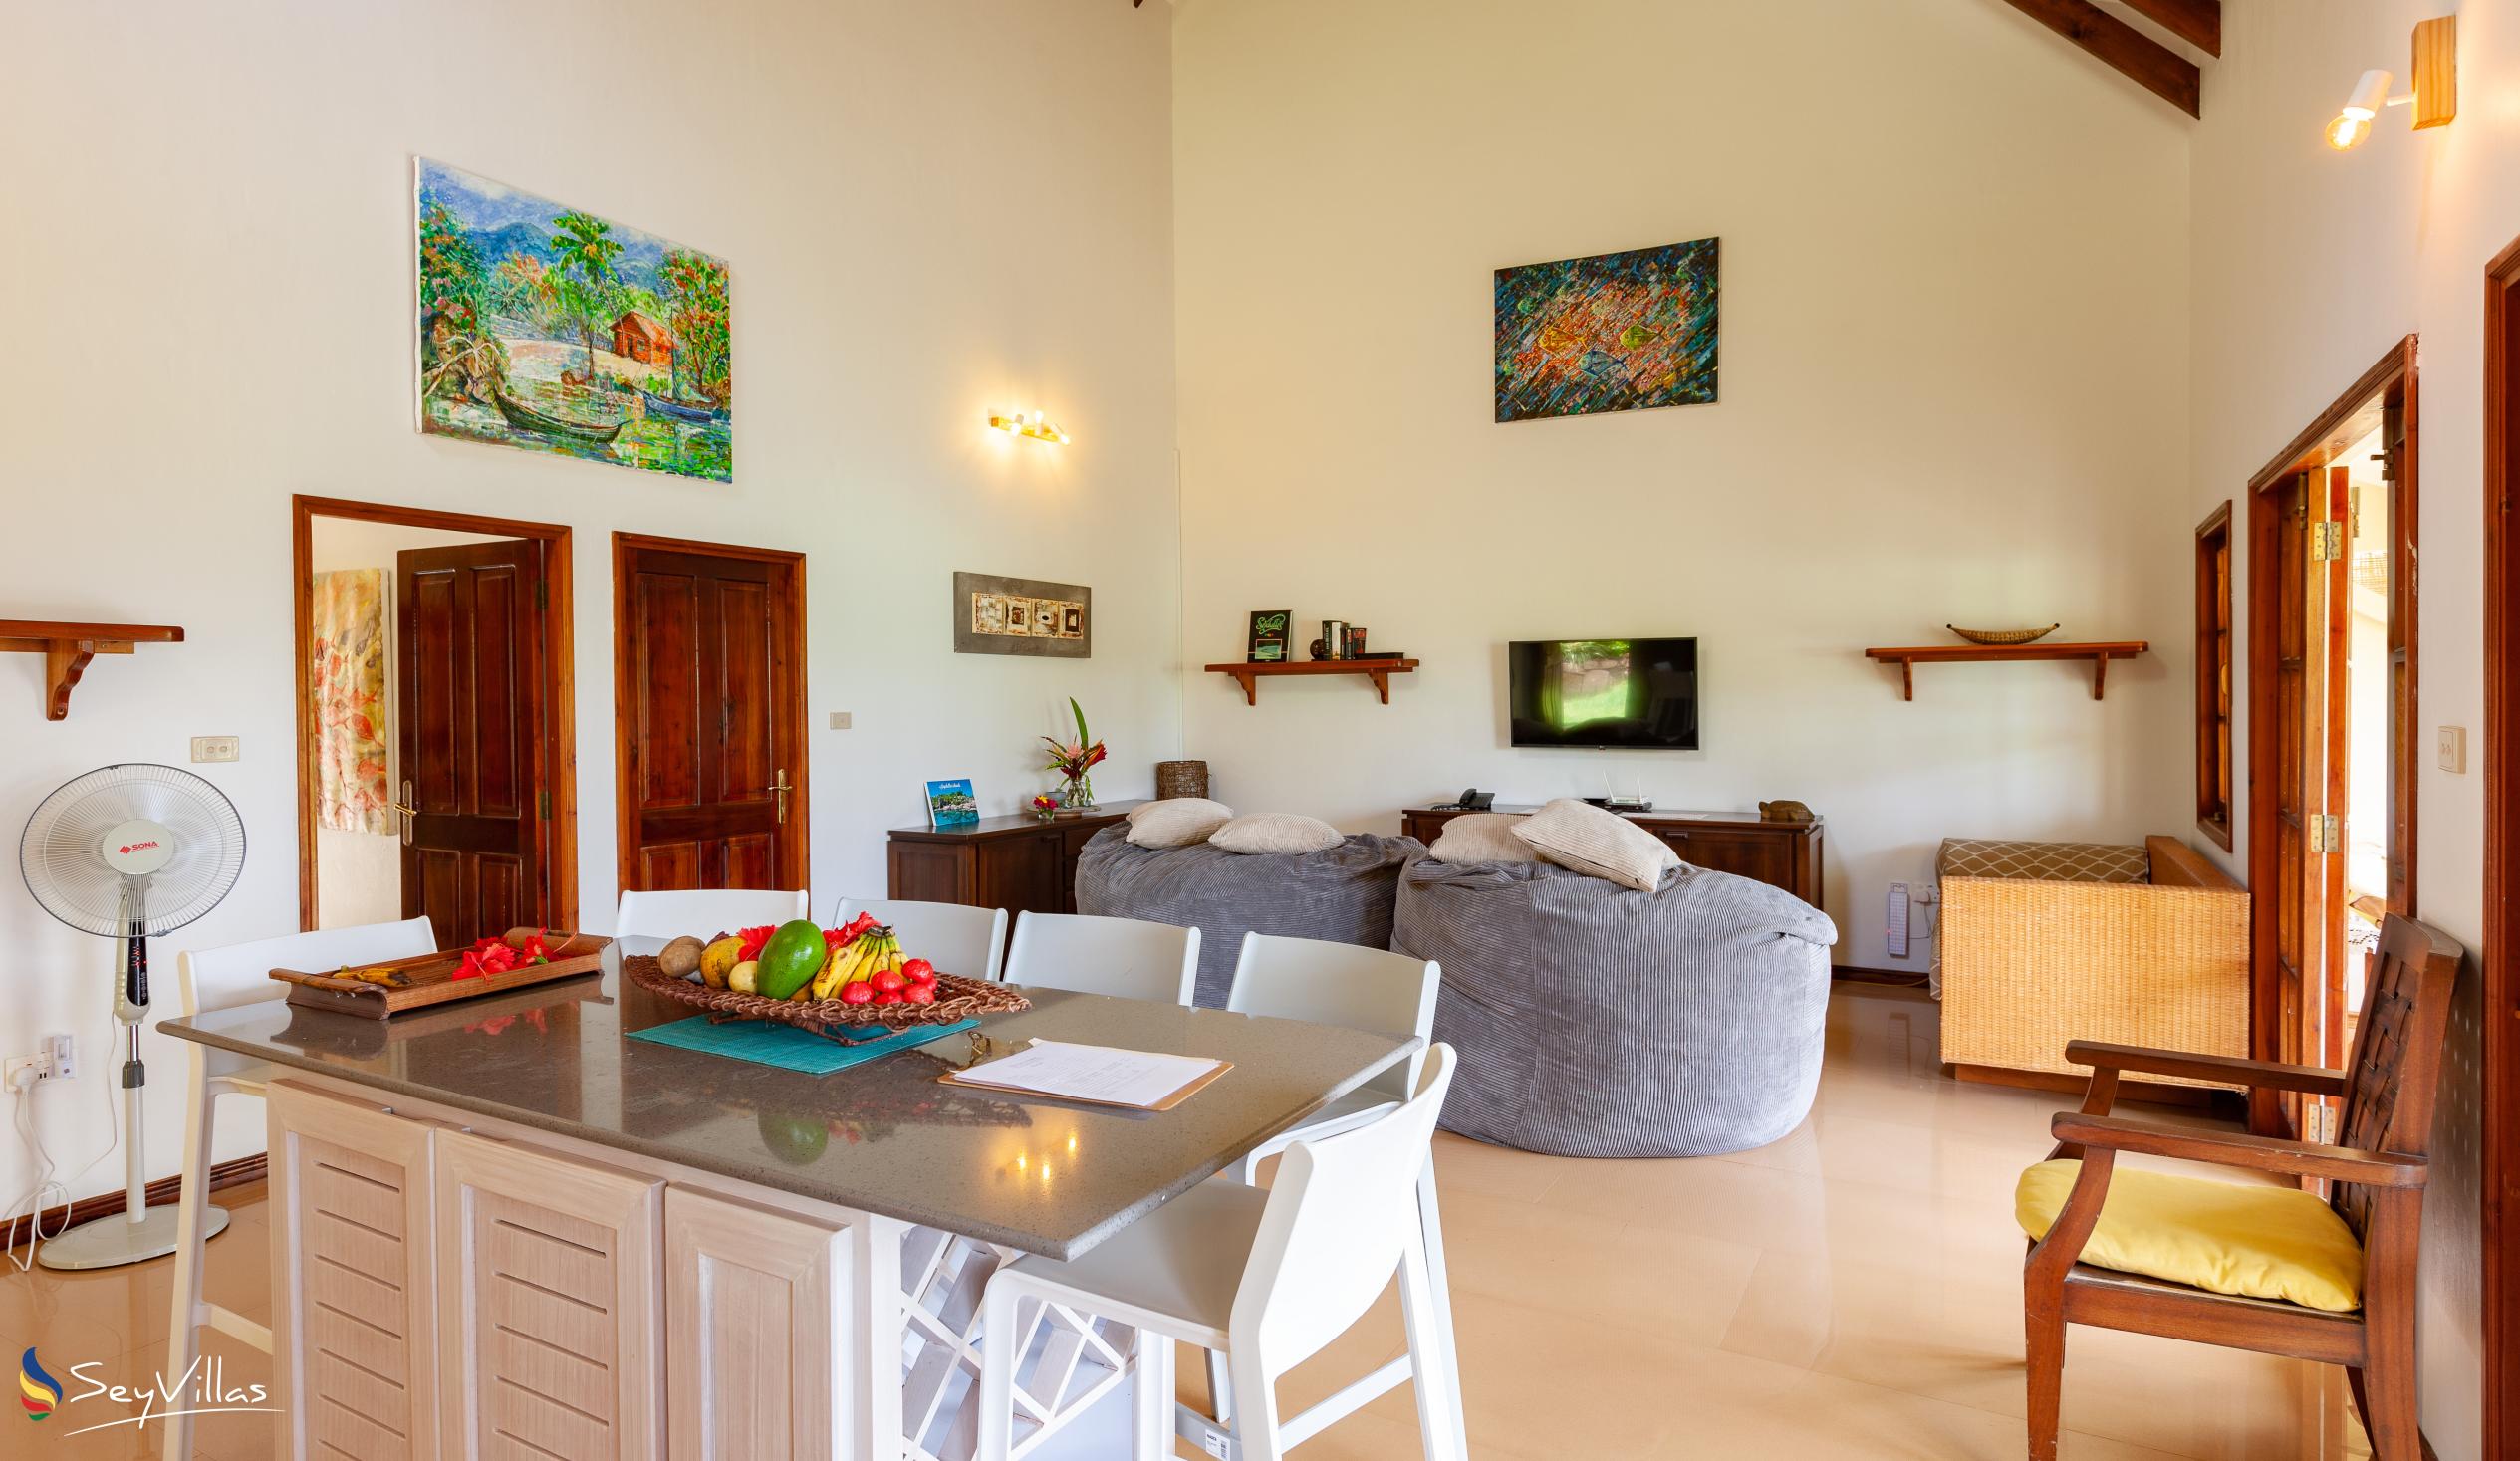 Foto 43: Villas du Voyageur - Appartement Bourgois / Appartement Job - Praslin (Seychellen)